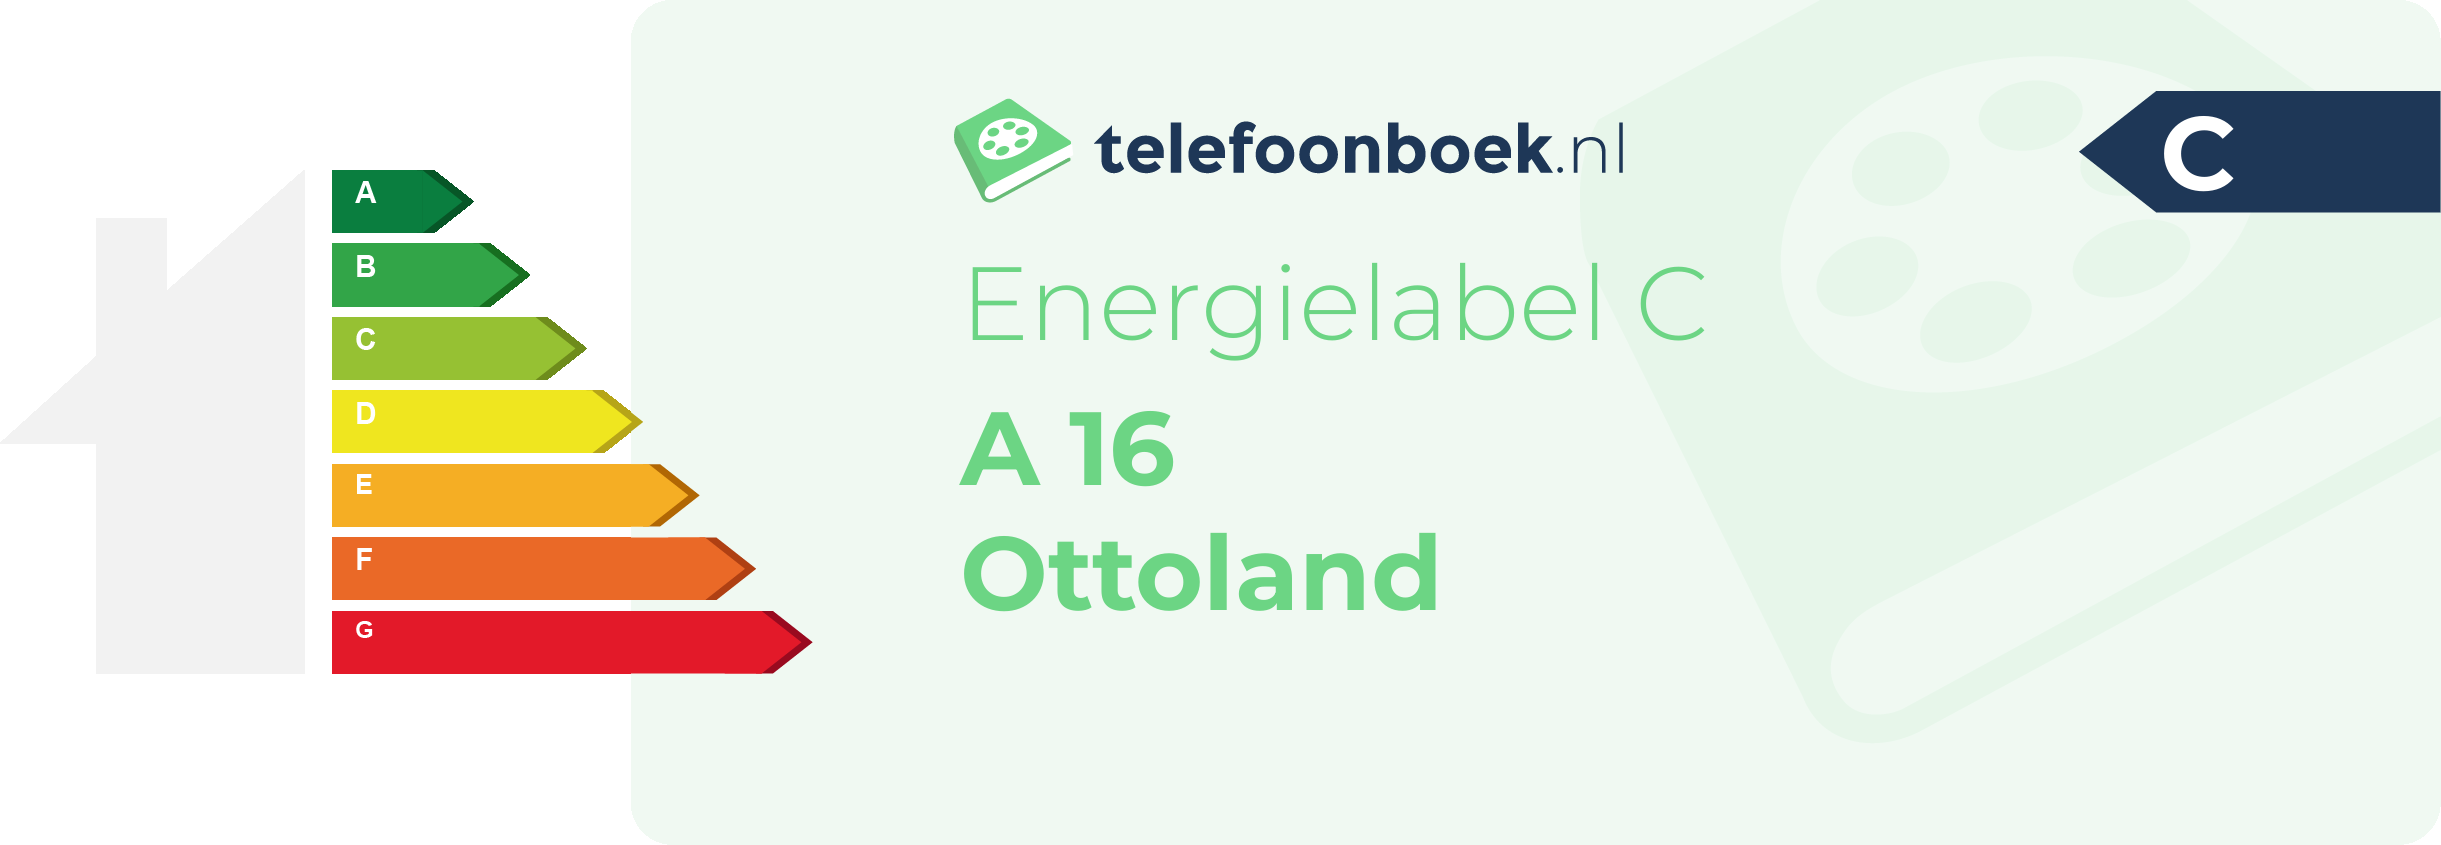 Energielabel A 16 Ottoland